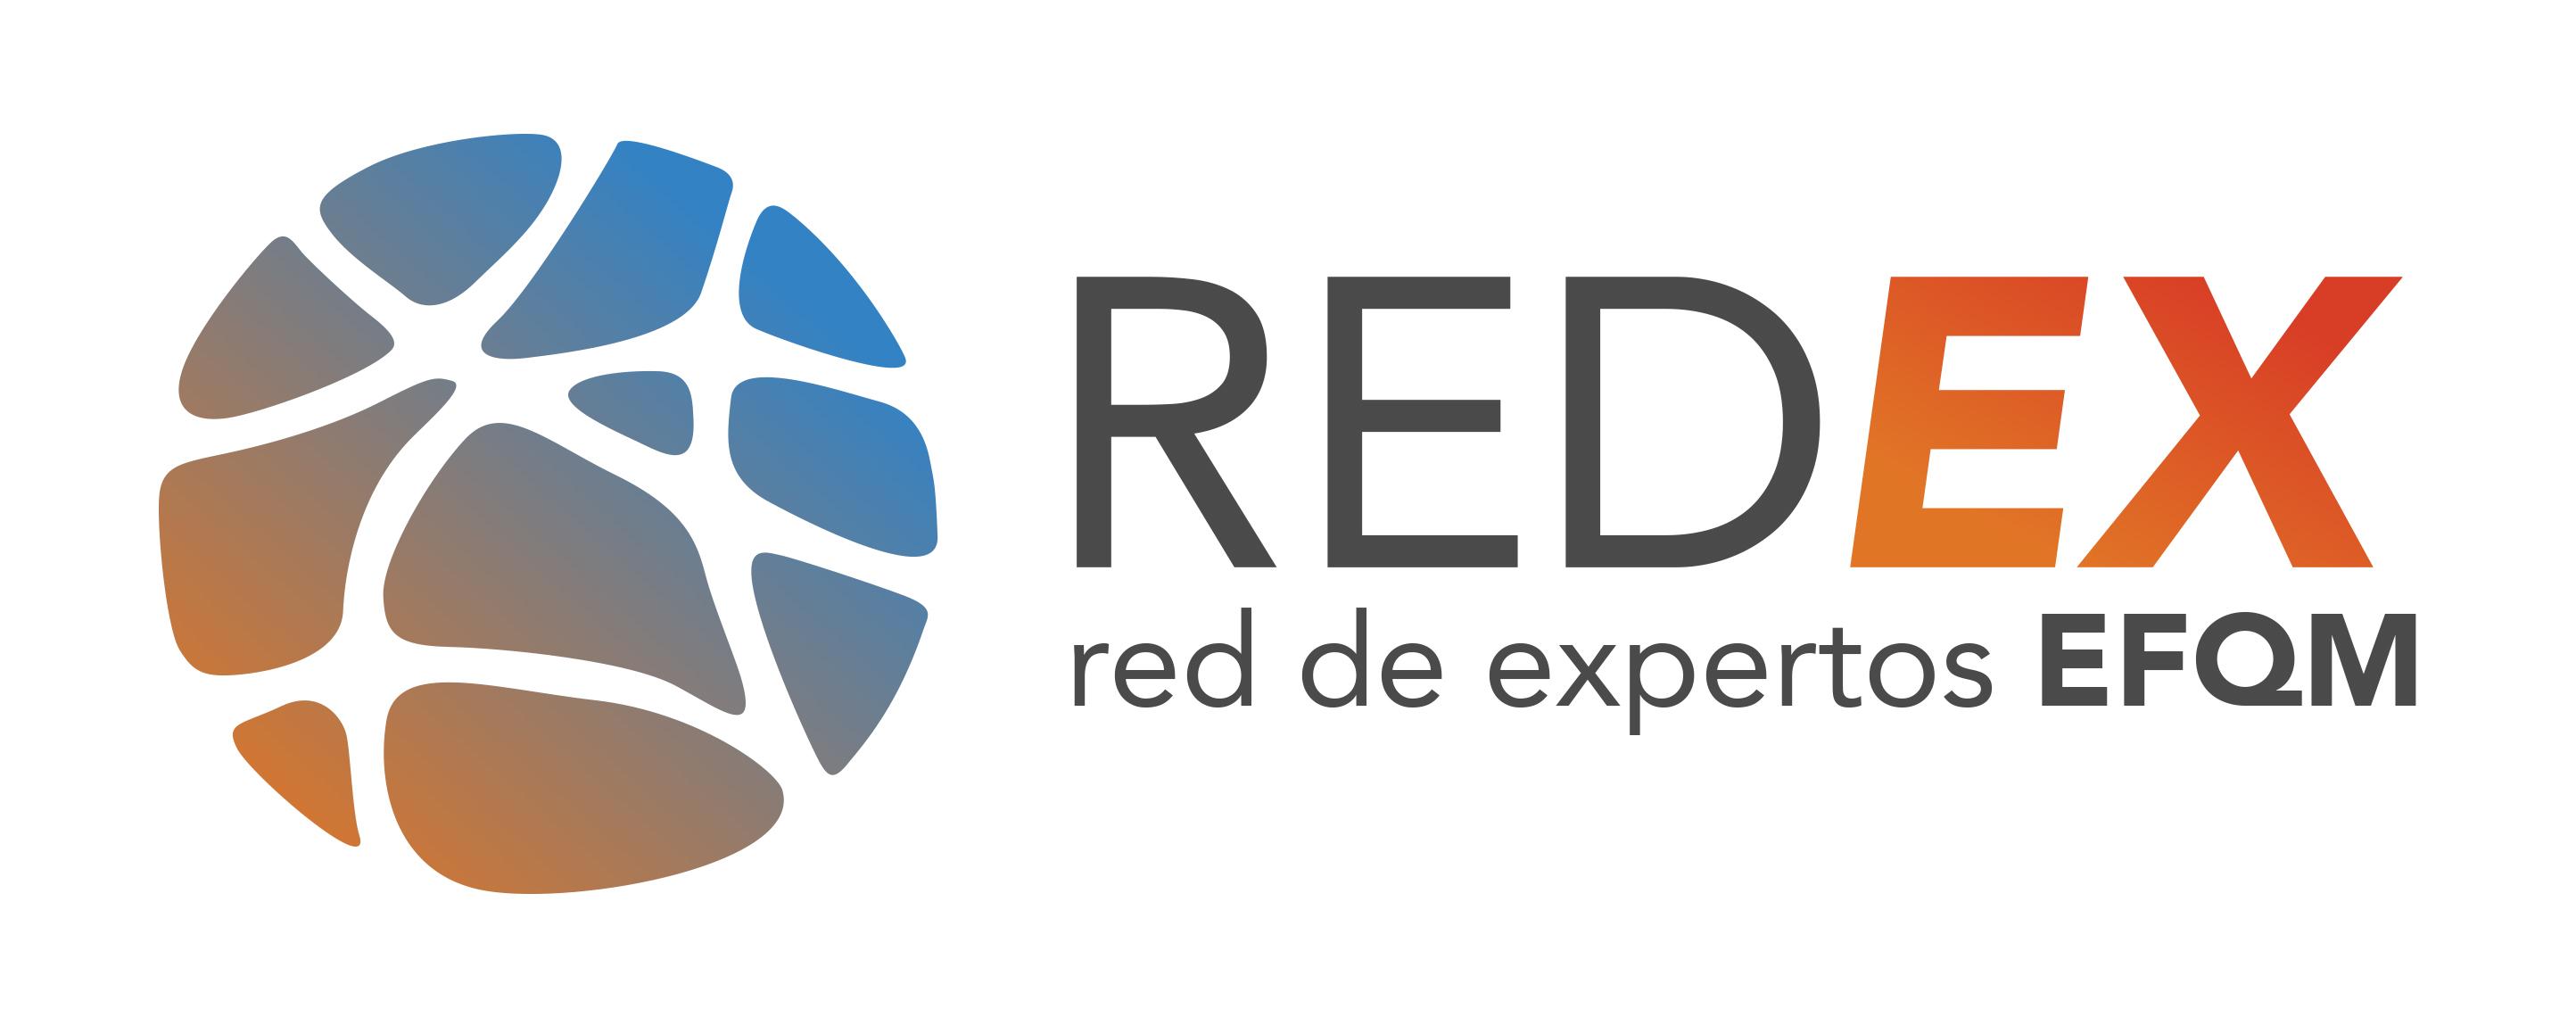 Red de Expertos EFQM - REDEX